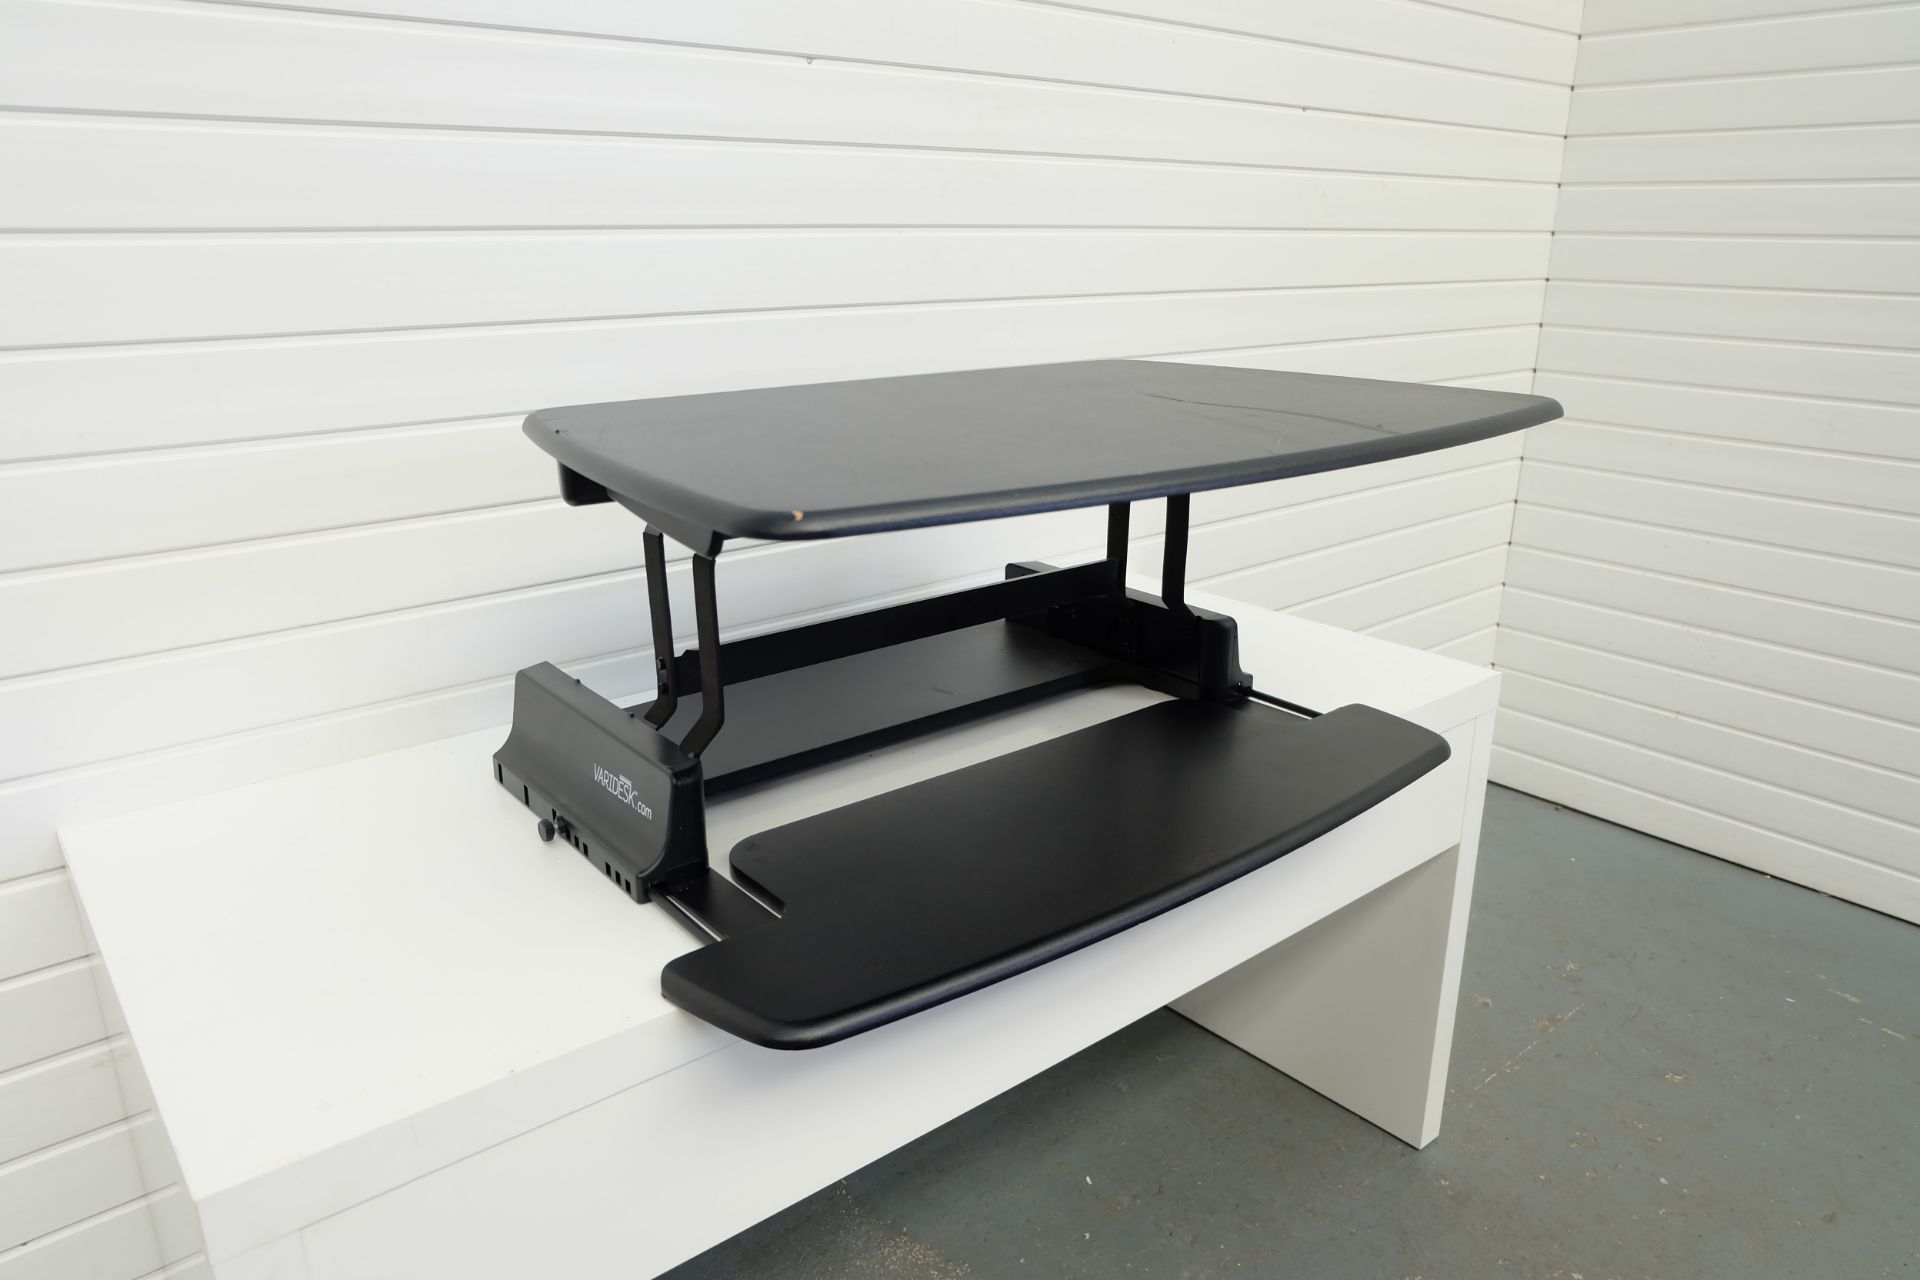 Varidesk.com Adjustable Standing Desk. Variable Heights. Sliding Keyboard Shelf. 36" Wide. 15.5" Max - Image 2 of 4